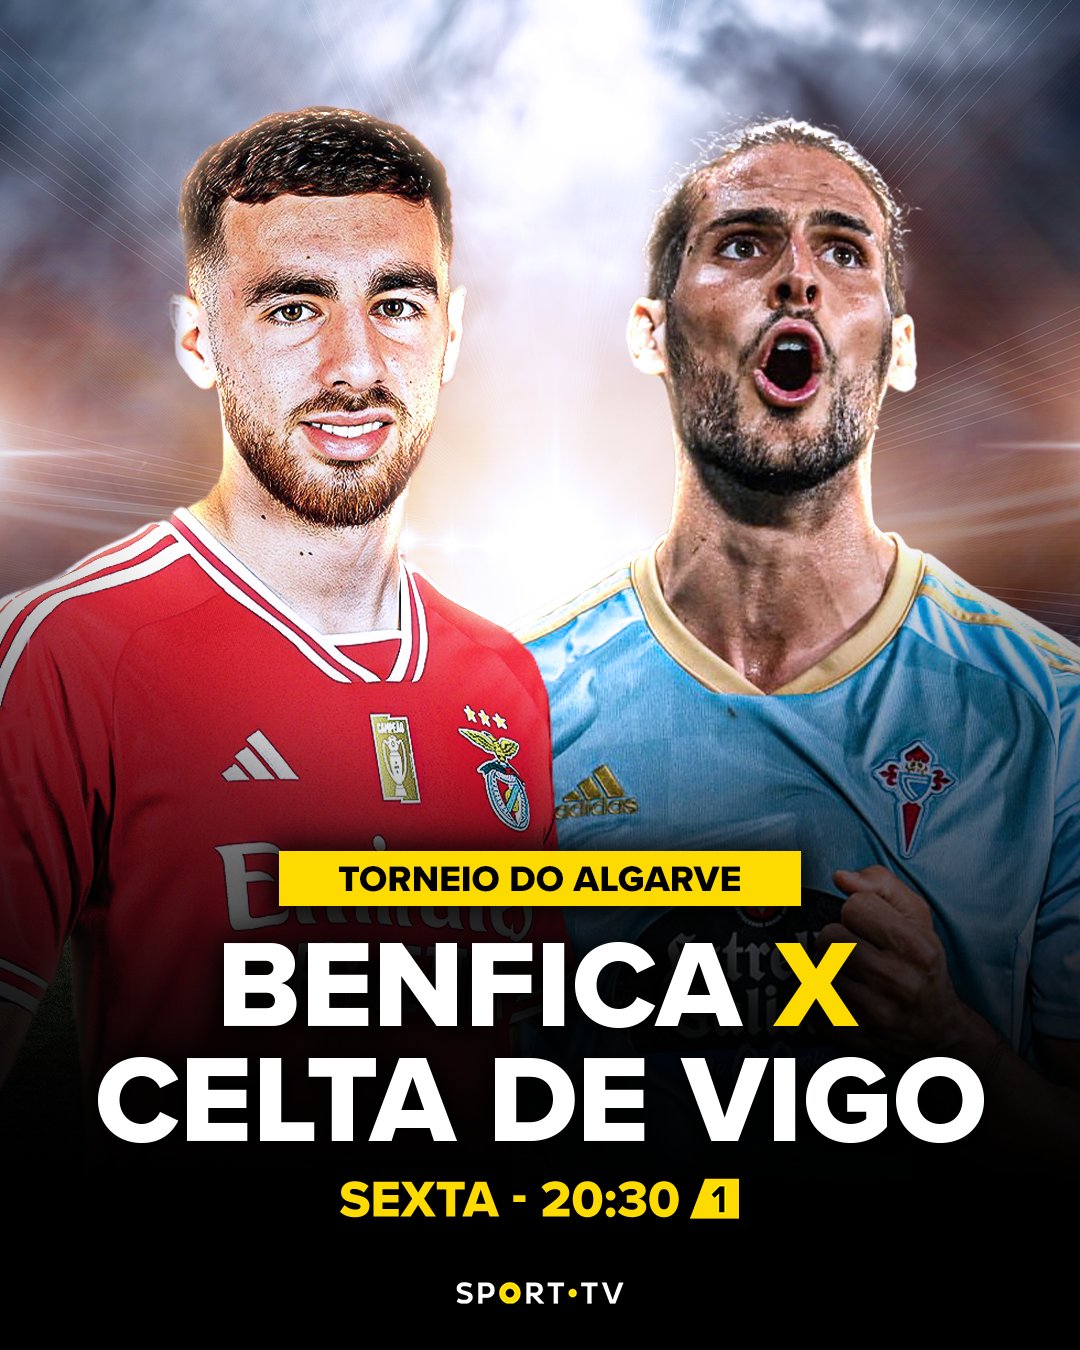 Futebol Divertido - A TVI está a transmitir online o jogo entre o Benfica e  o Celta de Vigo para quem vive no estrangeiro, para aceder e consegui  Ver mais